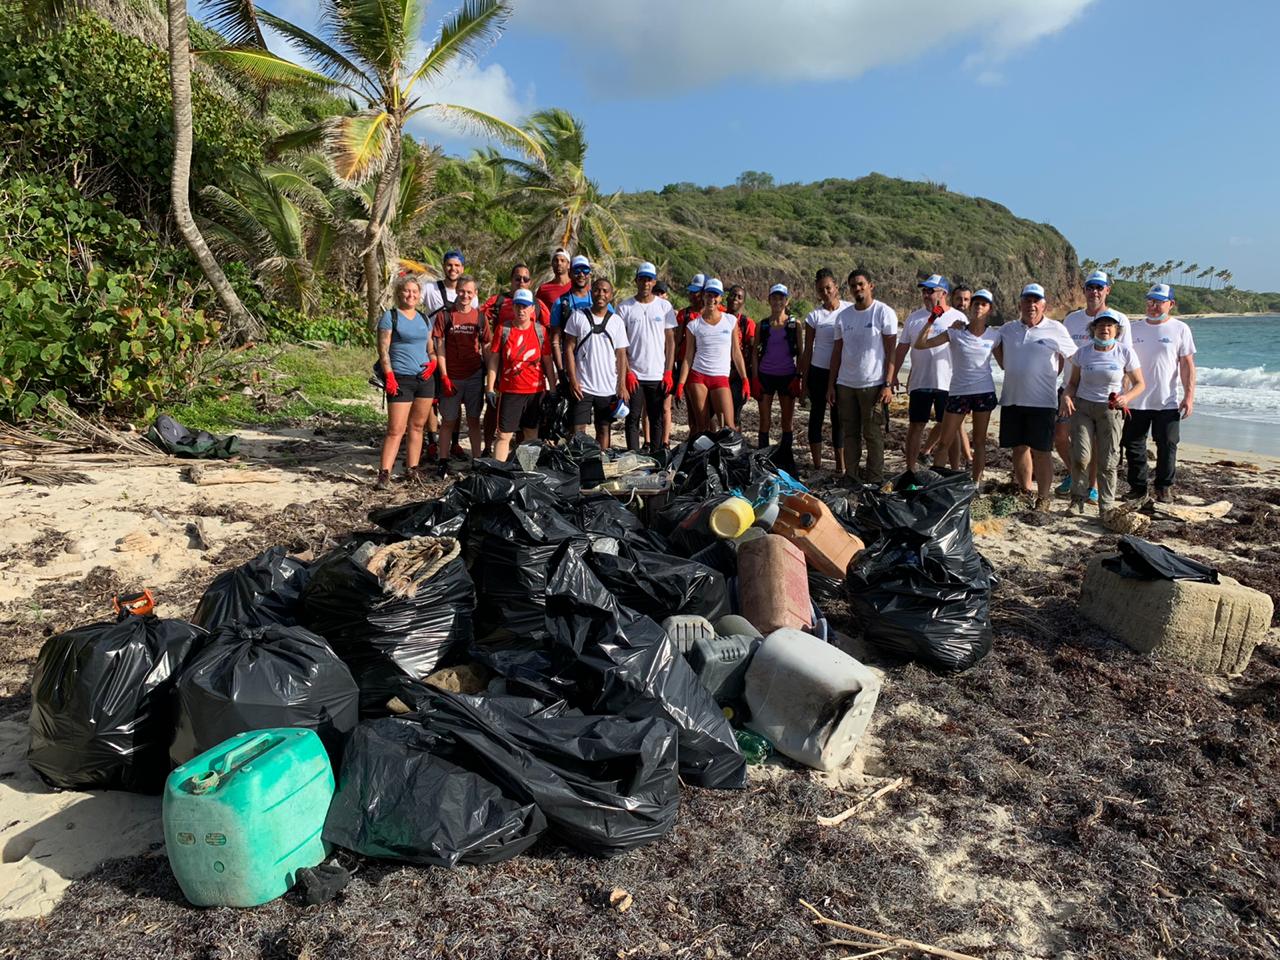     Une collecte des déchets sur le littoral de Cap Chevalier

